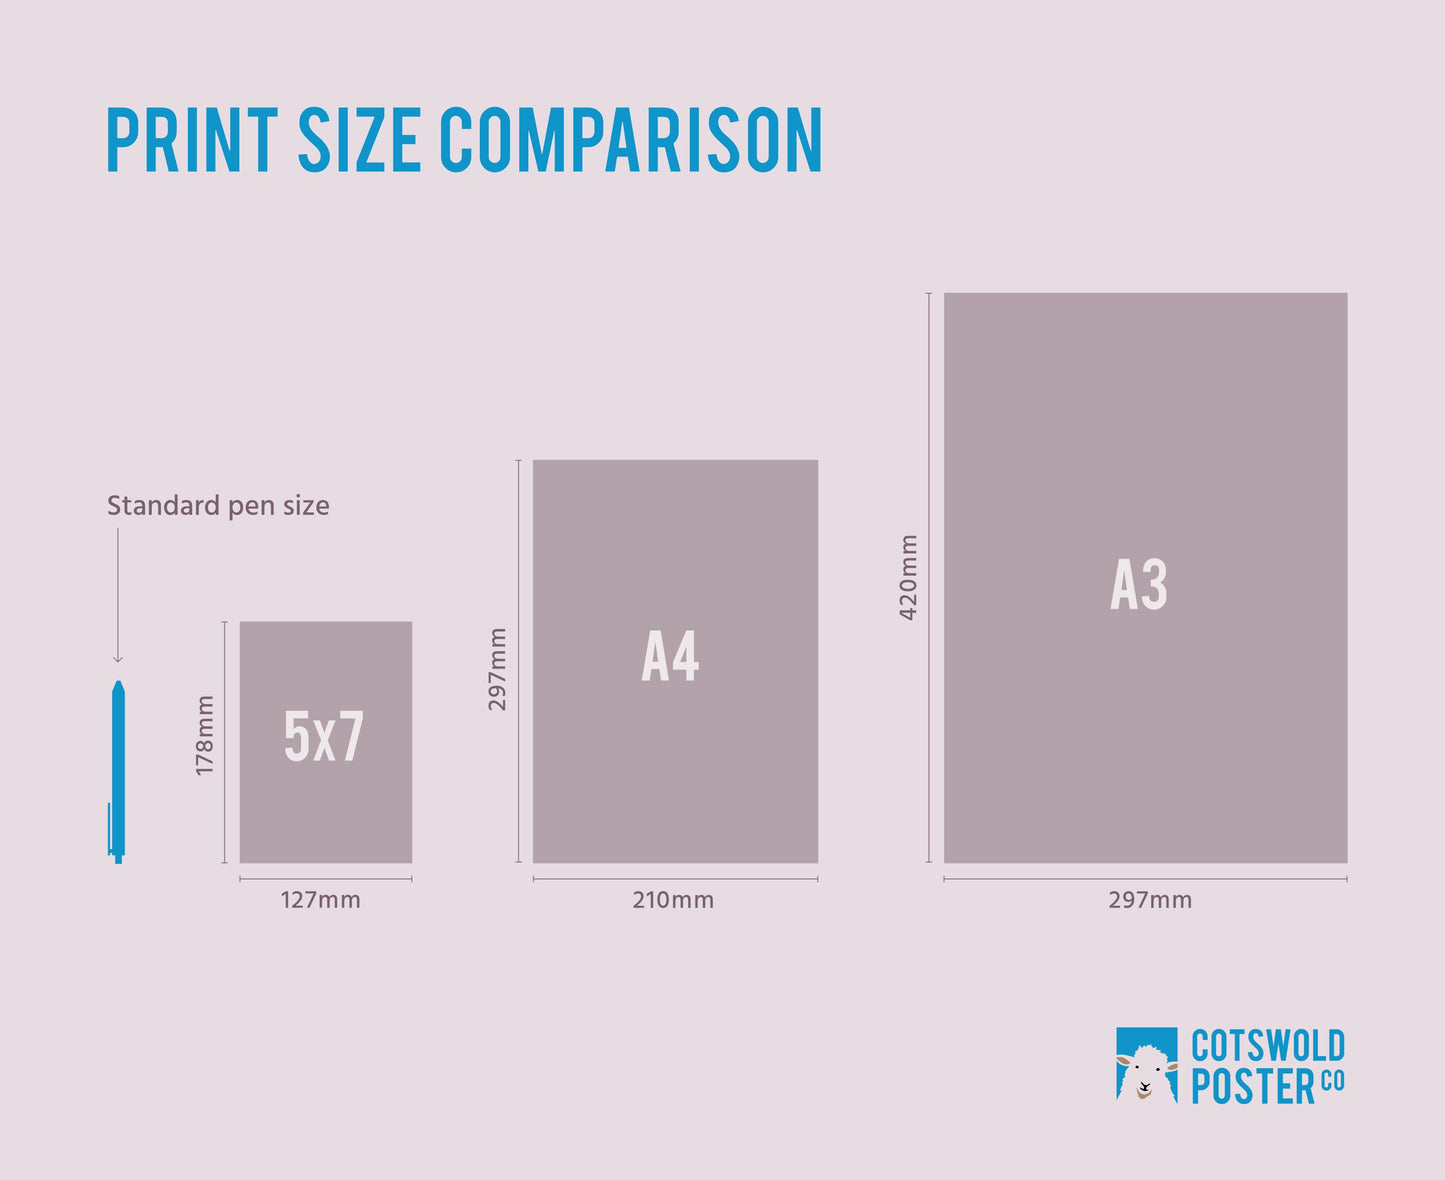 Art print scale comparison